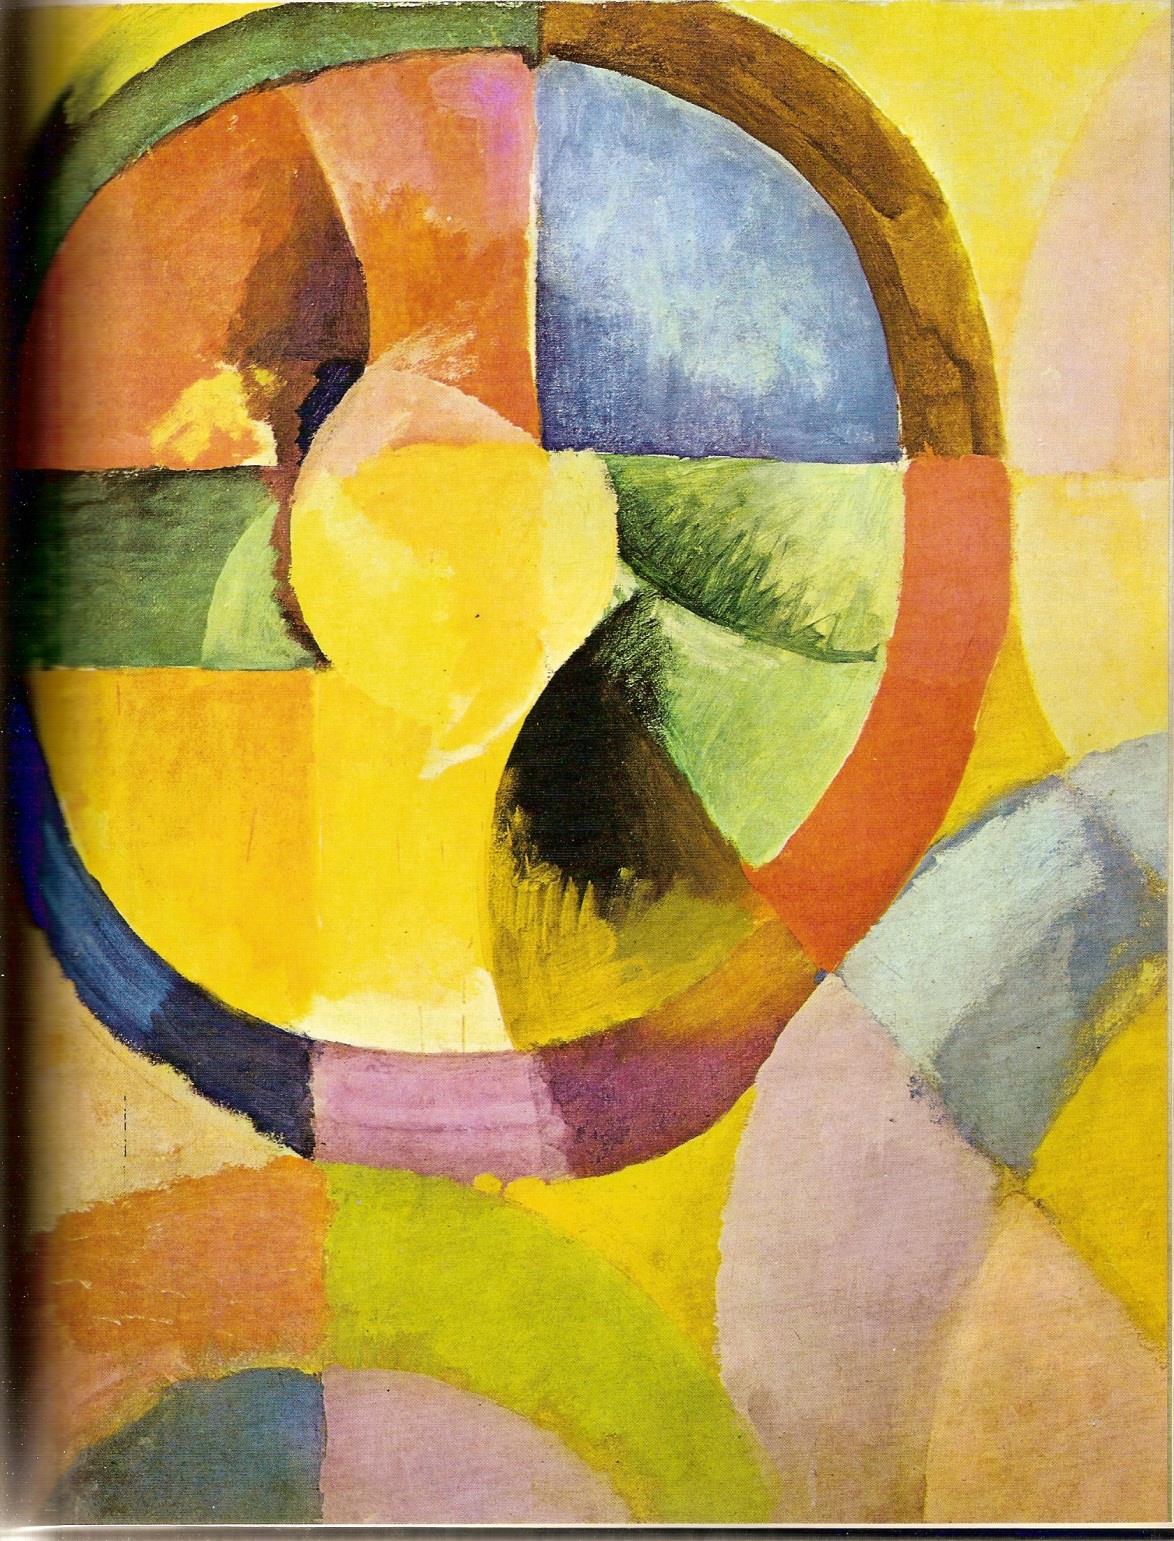 ROBERT DELAUNAY (1885-1941) El abstraccionismo creó un juego de colores primarios y un dinamismo en el mismo pincelazo que trazó nuevas formas basadas en la geometría pero de ninguna manera clásicas.